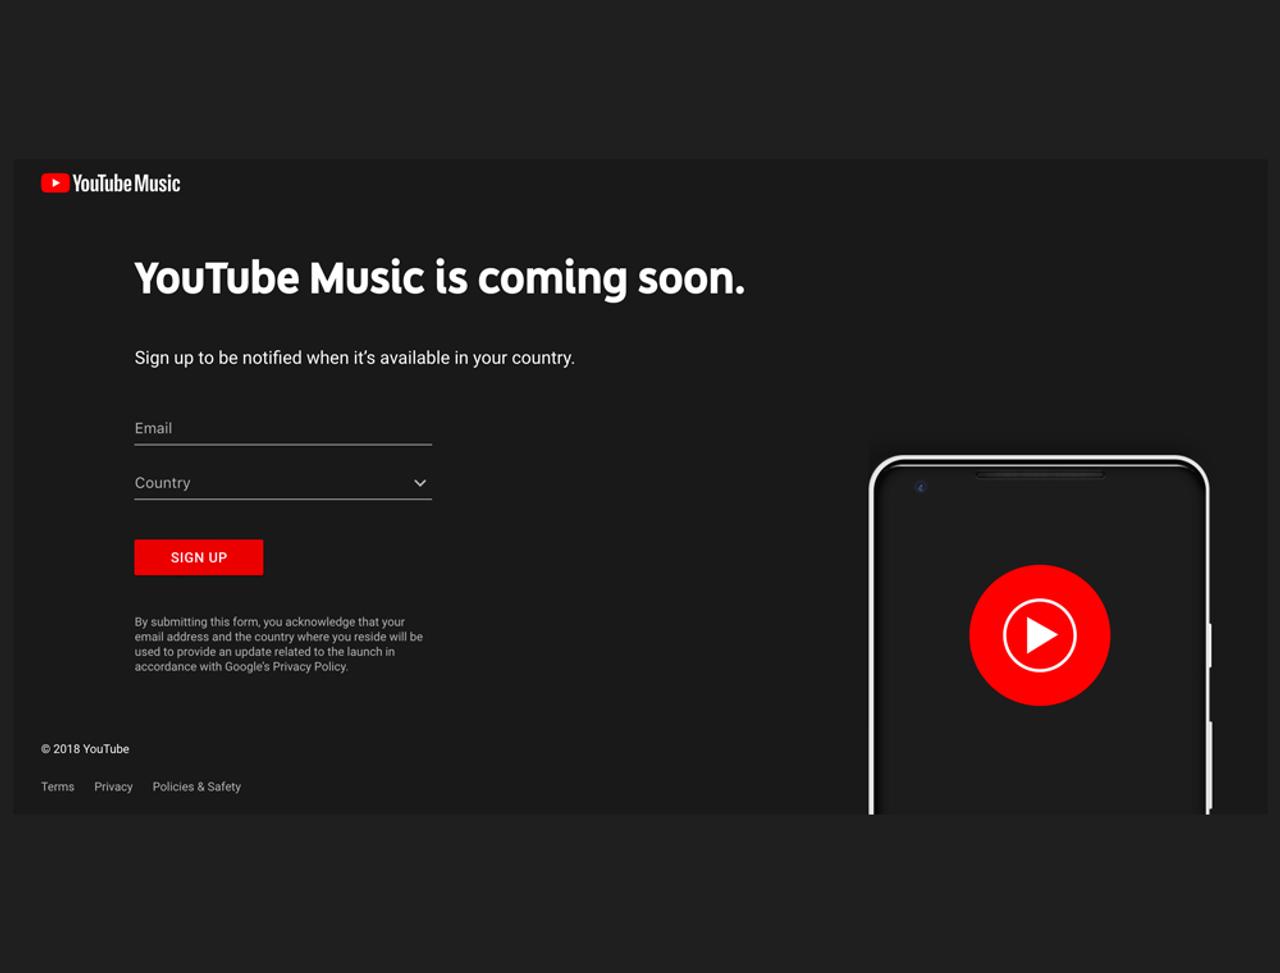 YouTubeの音楽サービス、YouTube Musicローンチは5月22日に。でも日本上陸はまだ先だよう…